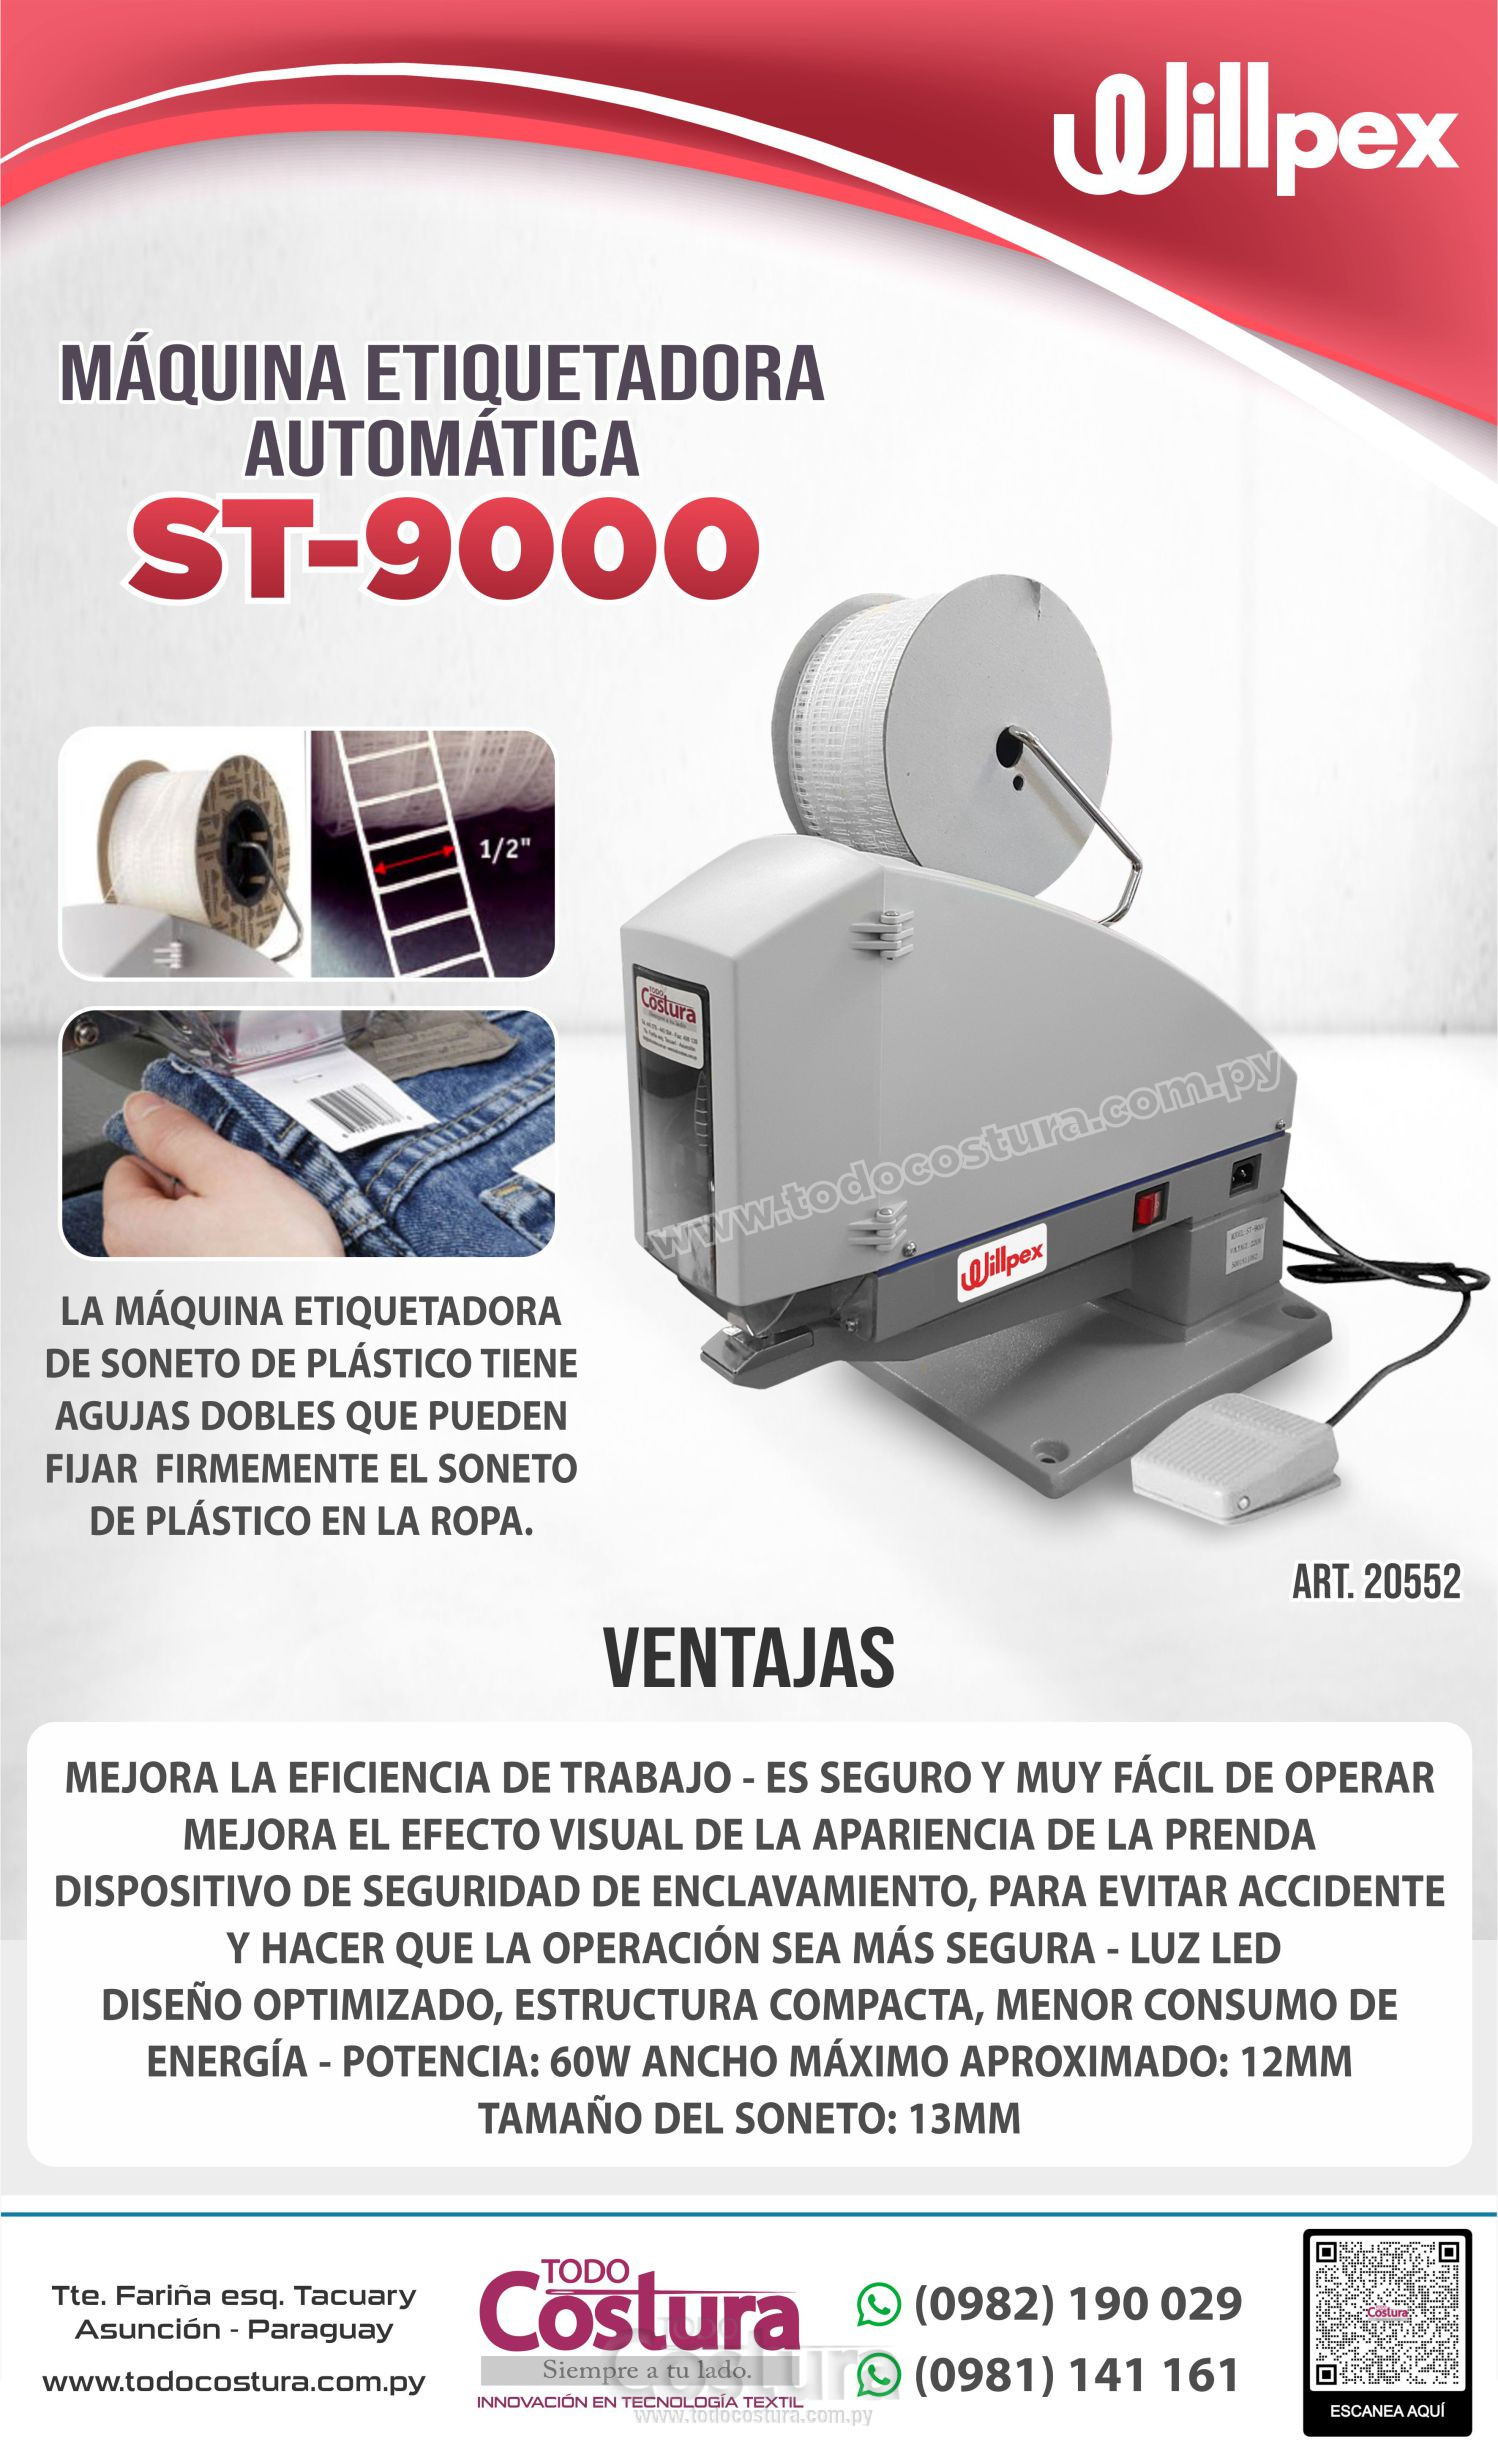 MAQUINA ETIQUETADORA AUTOMATICA WILLPEX ST-9000